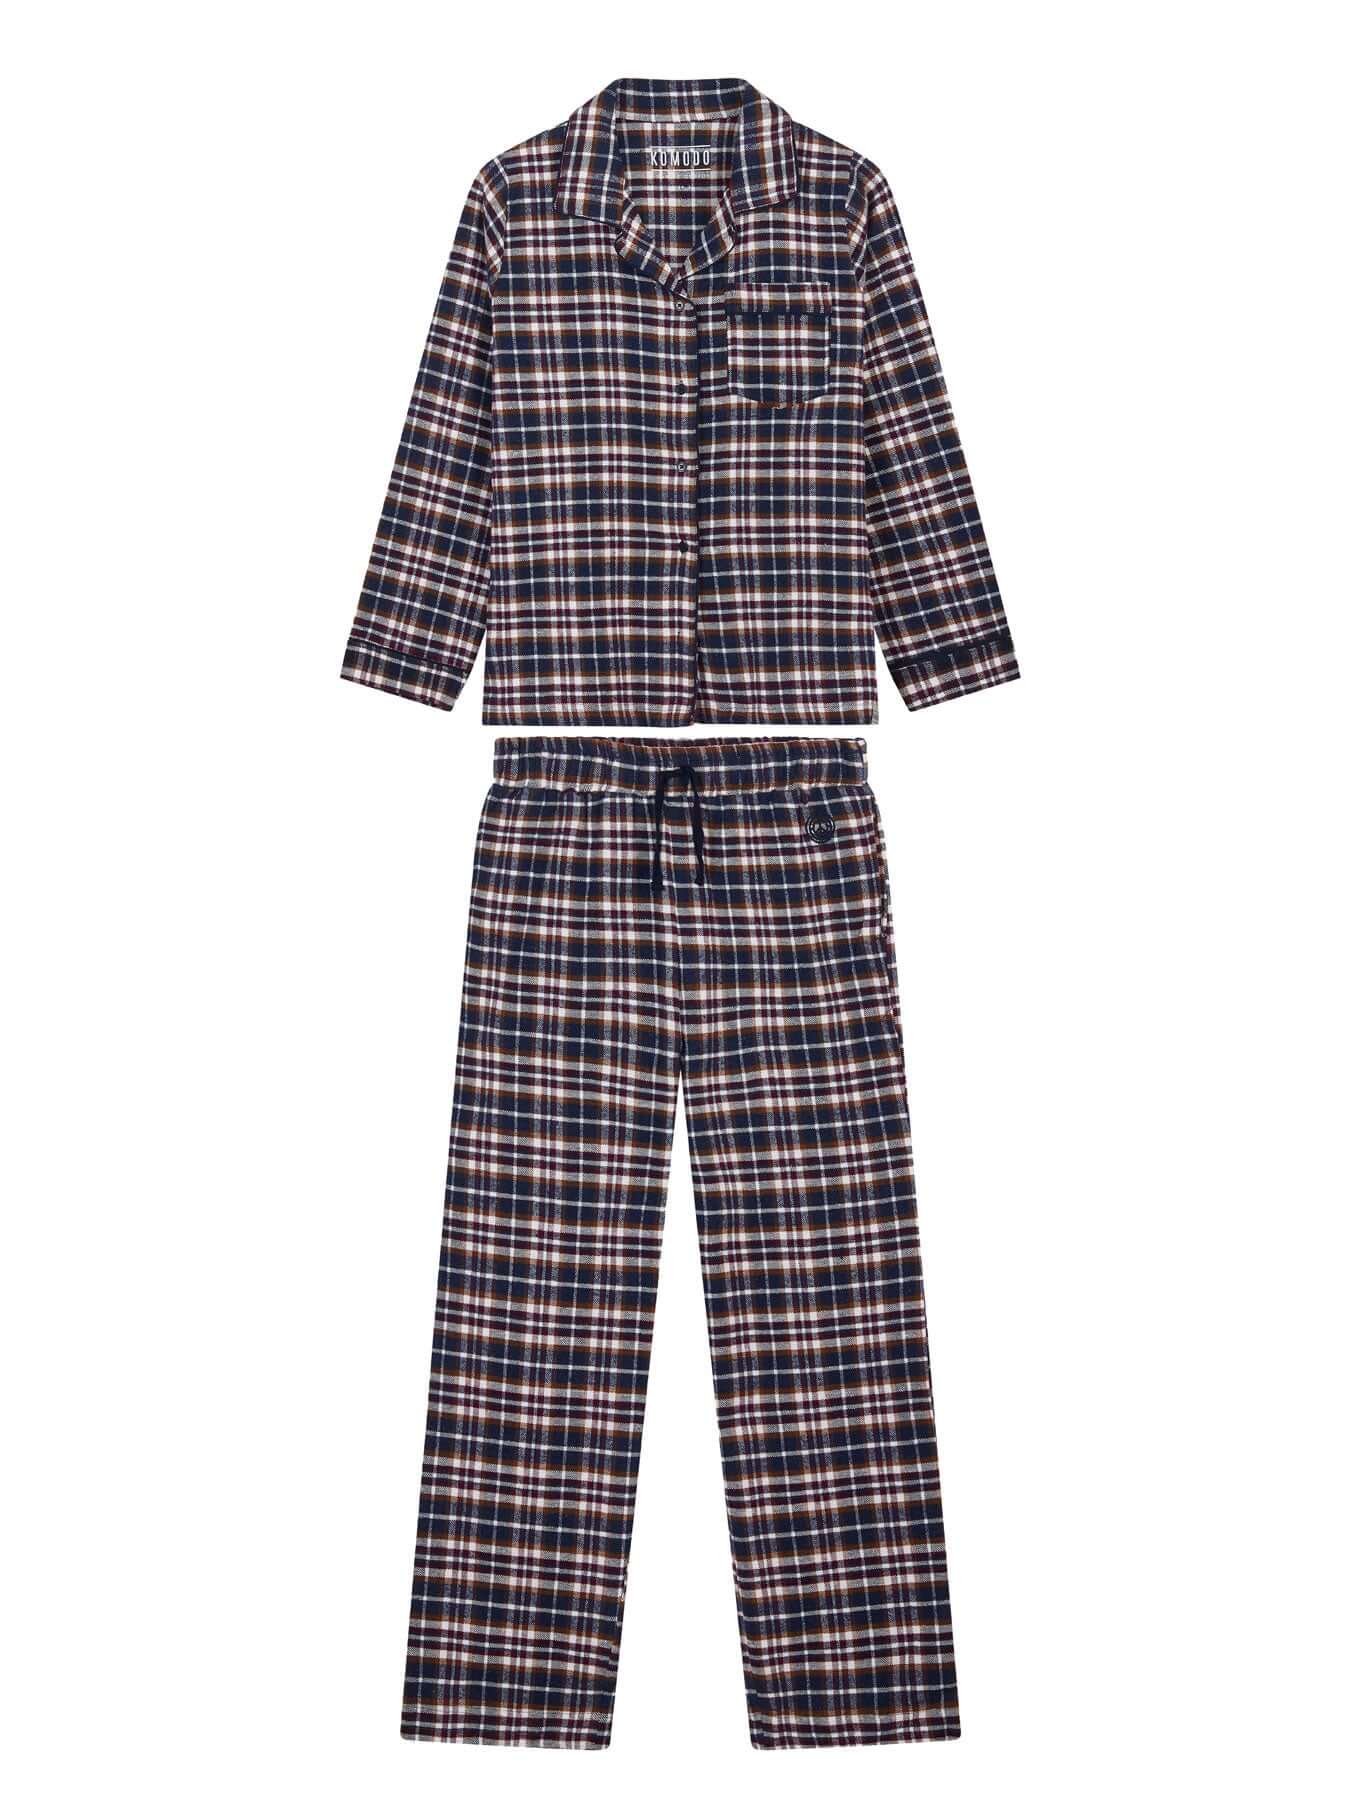 Dunkel - blaues Pyjama Set JIM JAM aus 100% Bio-Baumwolle von Komodo